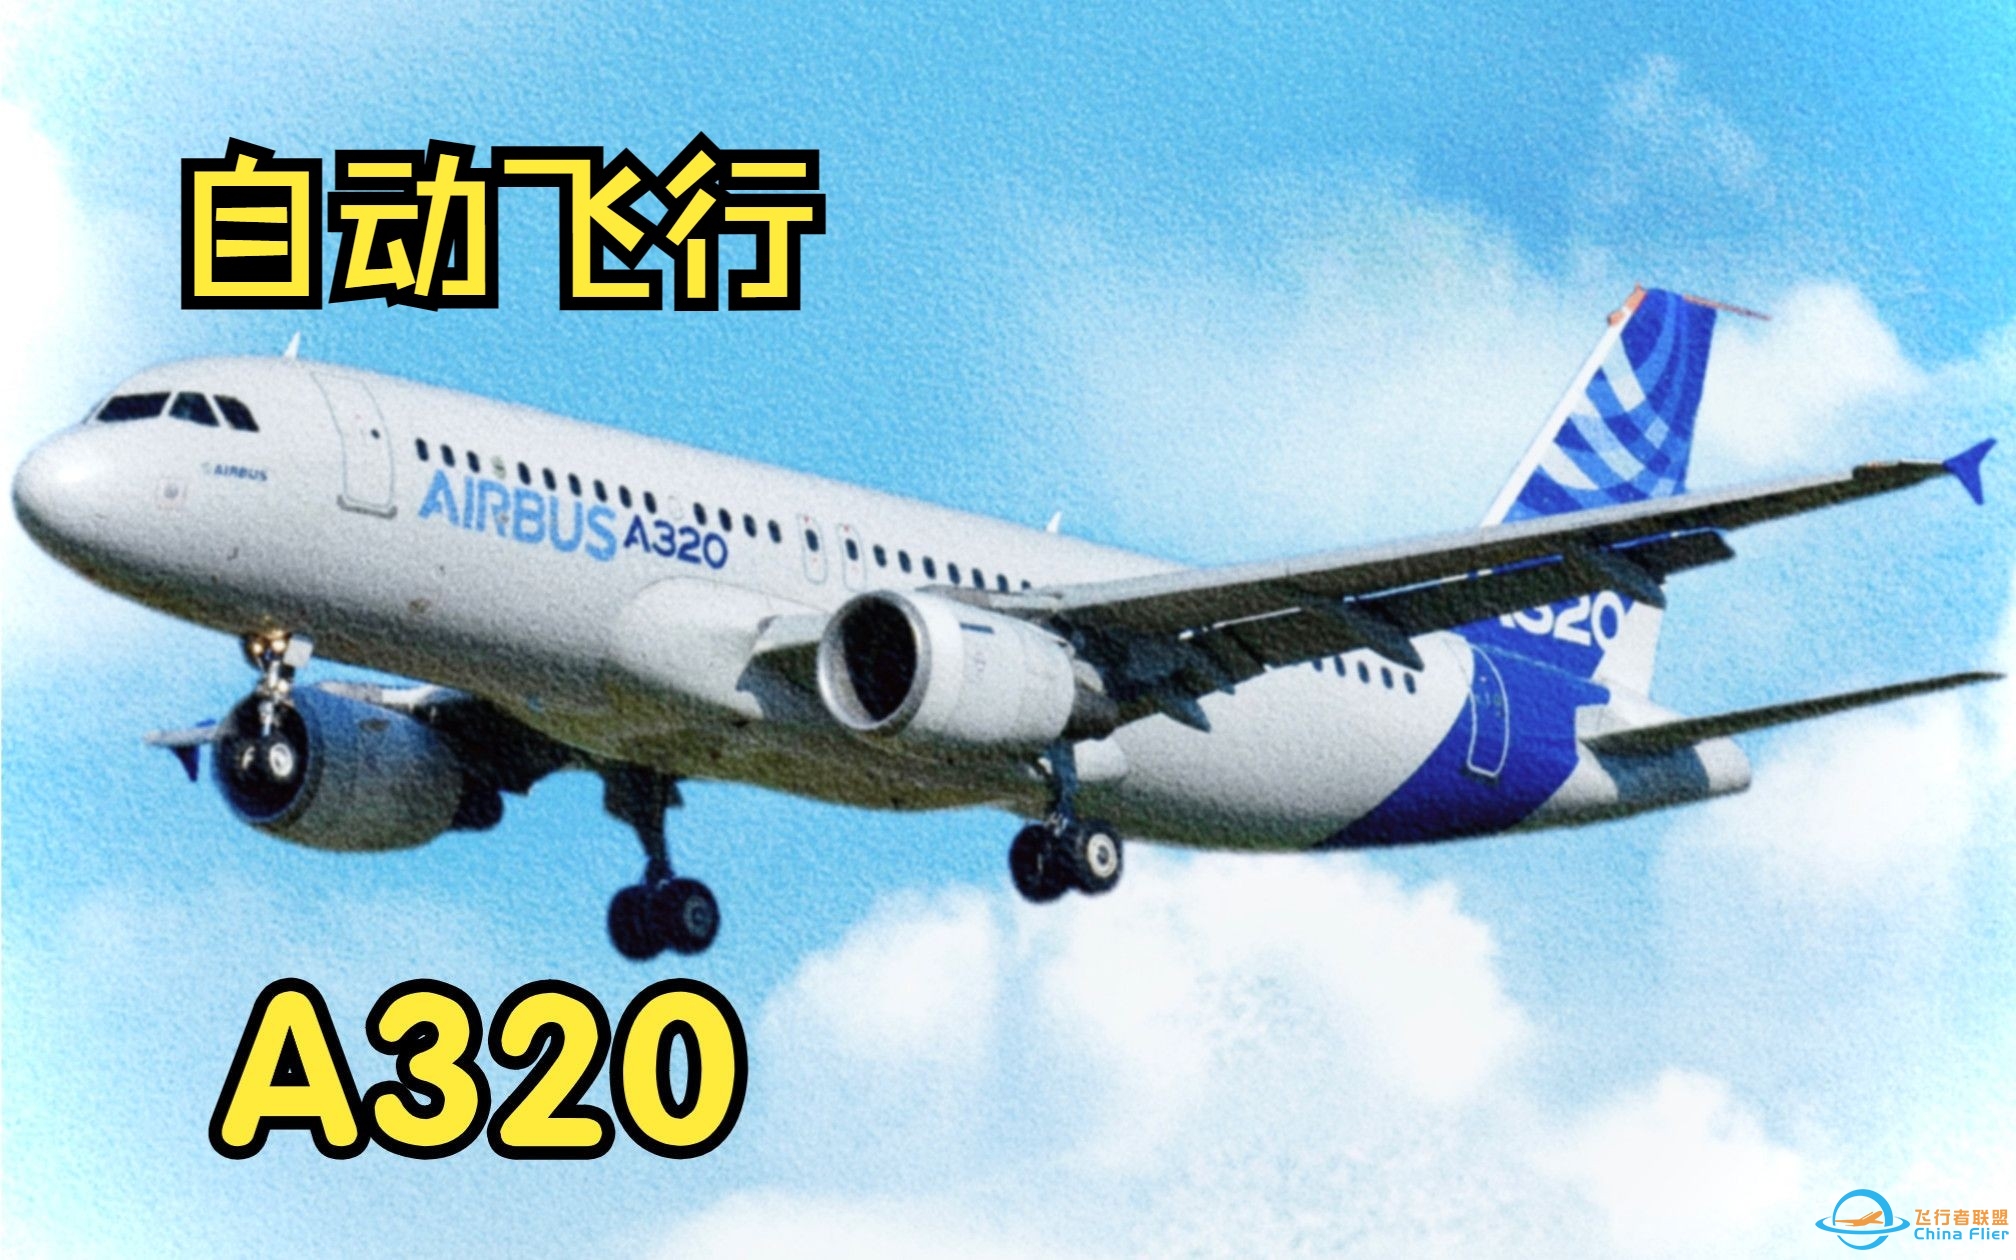 【飞行模拟从零学习空客A320】8.自动飞行系统-8925 